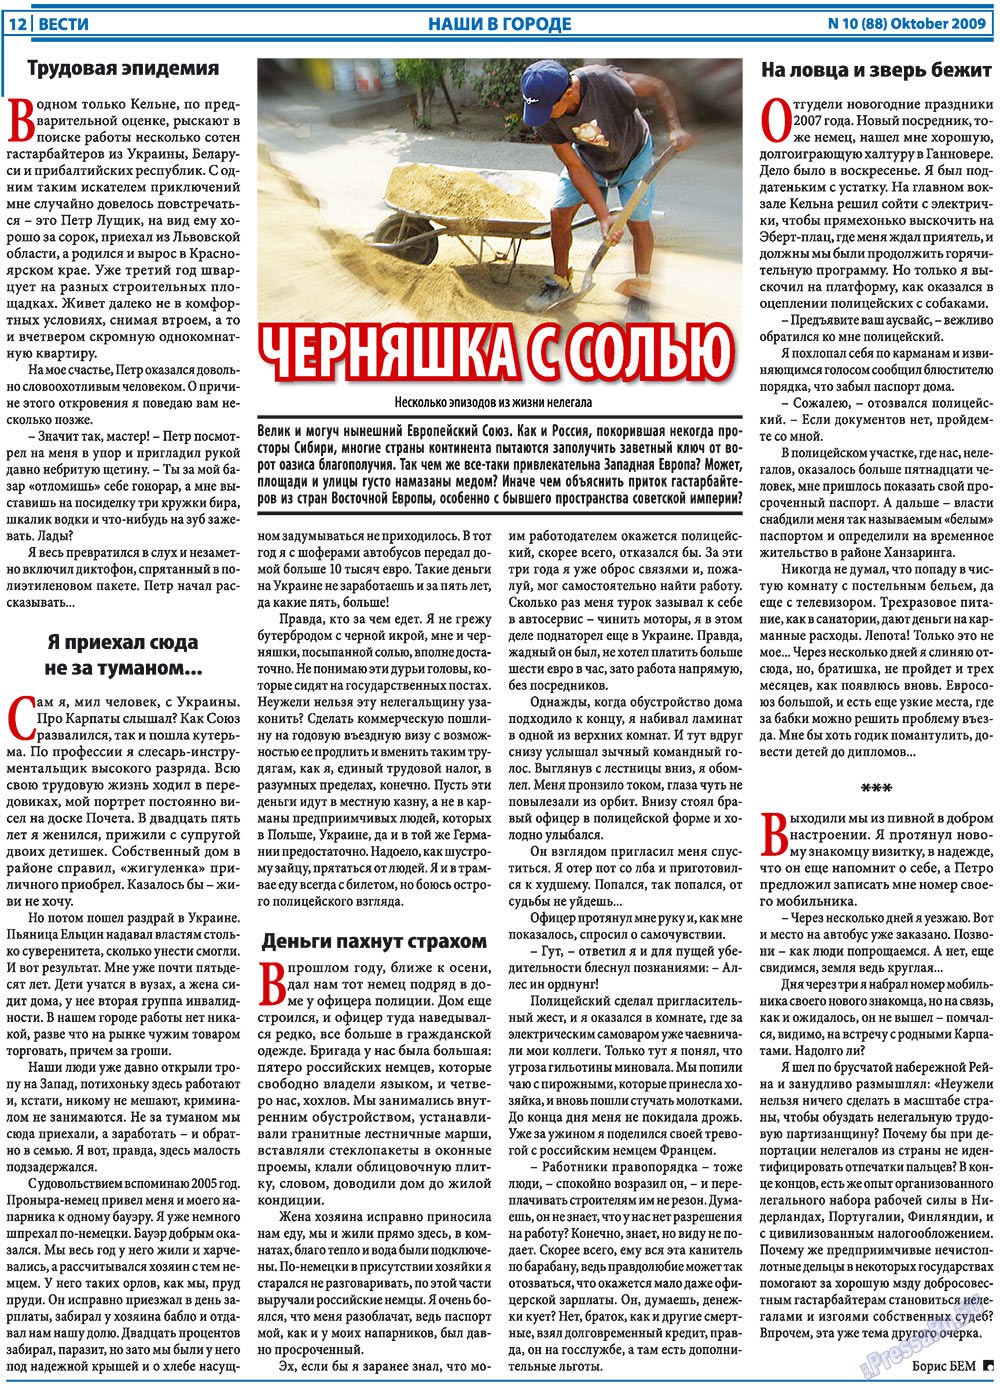 Вести, газета. 2009 №10 стр.12